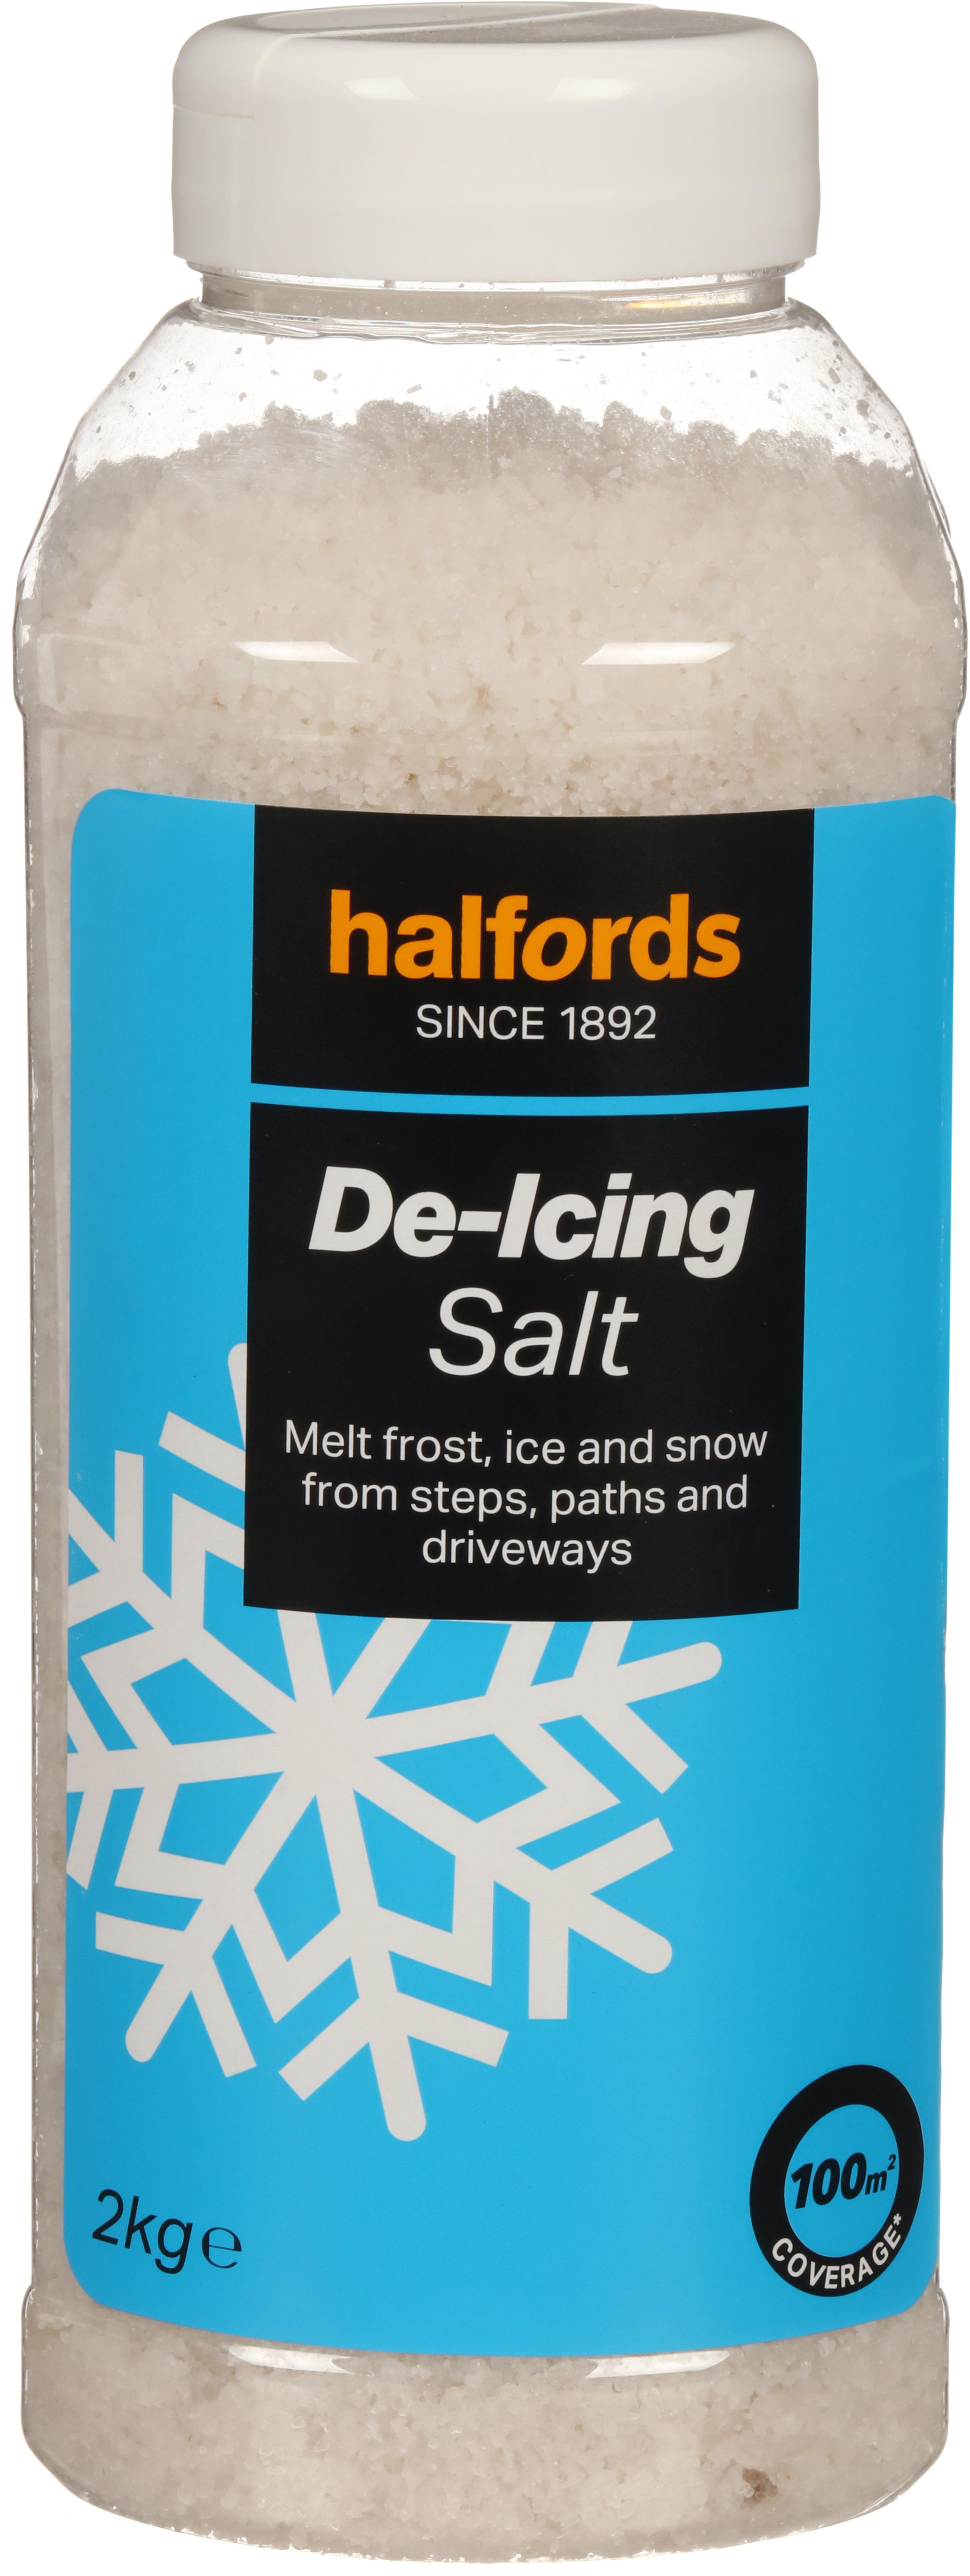 Halfords 2Kg De Icing Salt Tub